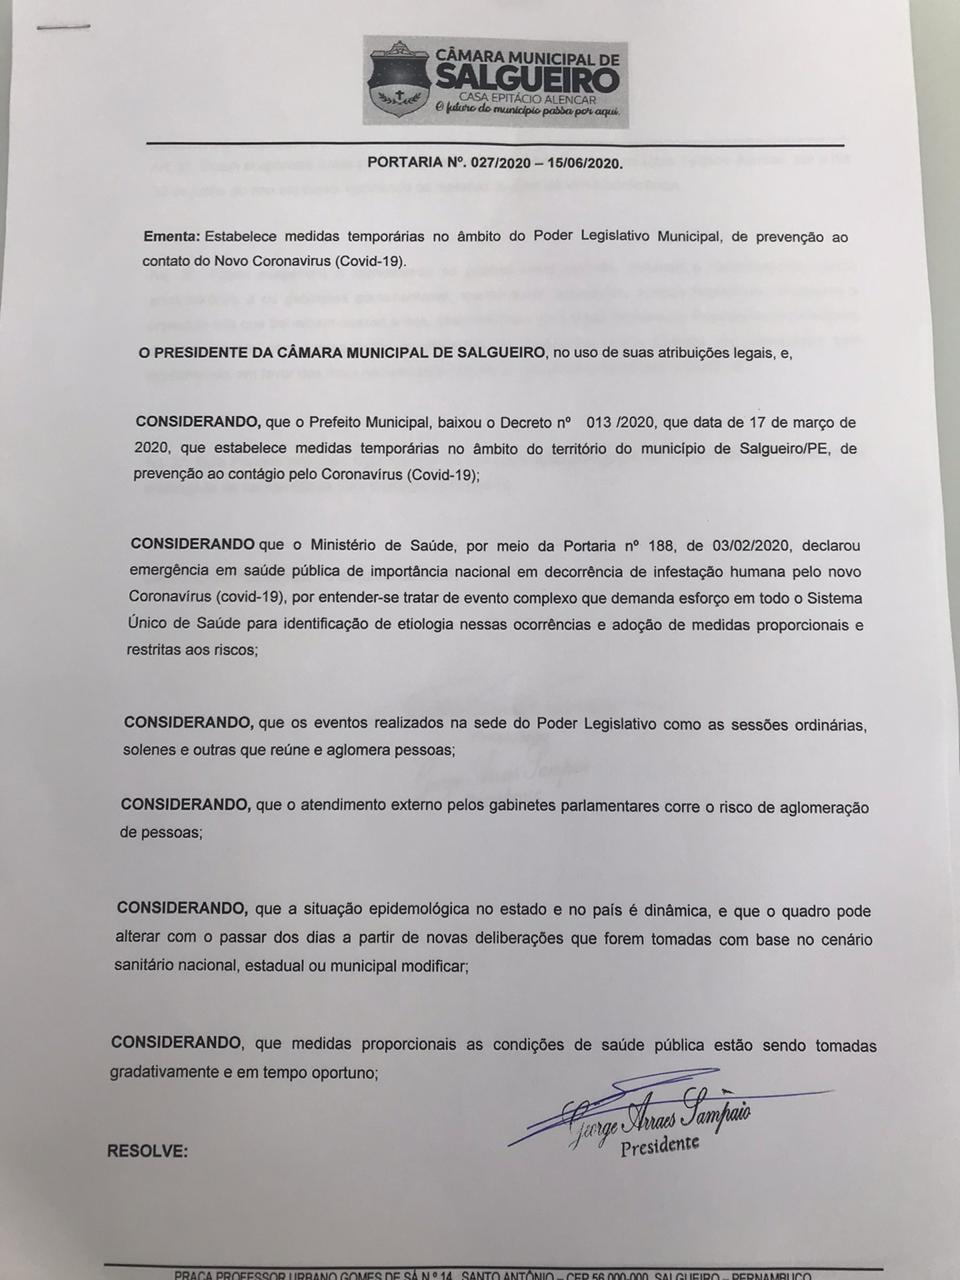 PREVENÇÃO AO CONTATO DO NOVO CORONAVÍRUS - Câmara de Vereadores prorroga decreto por mais 15 dias.